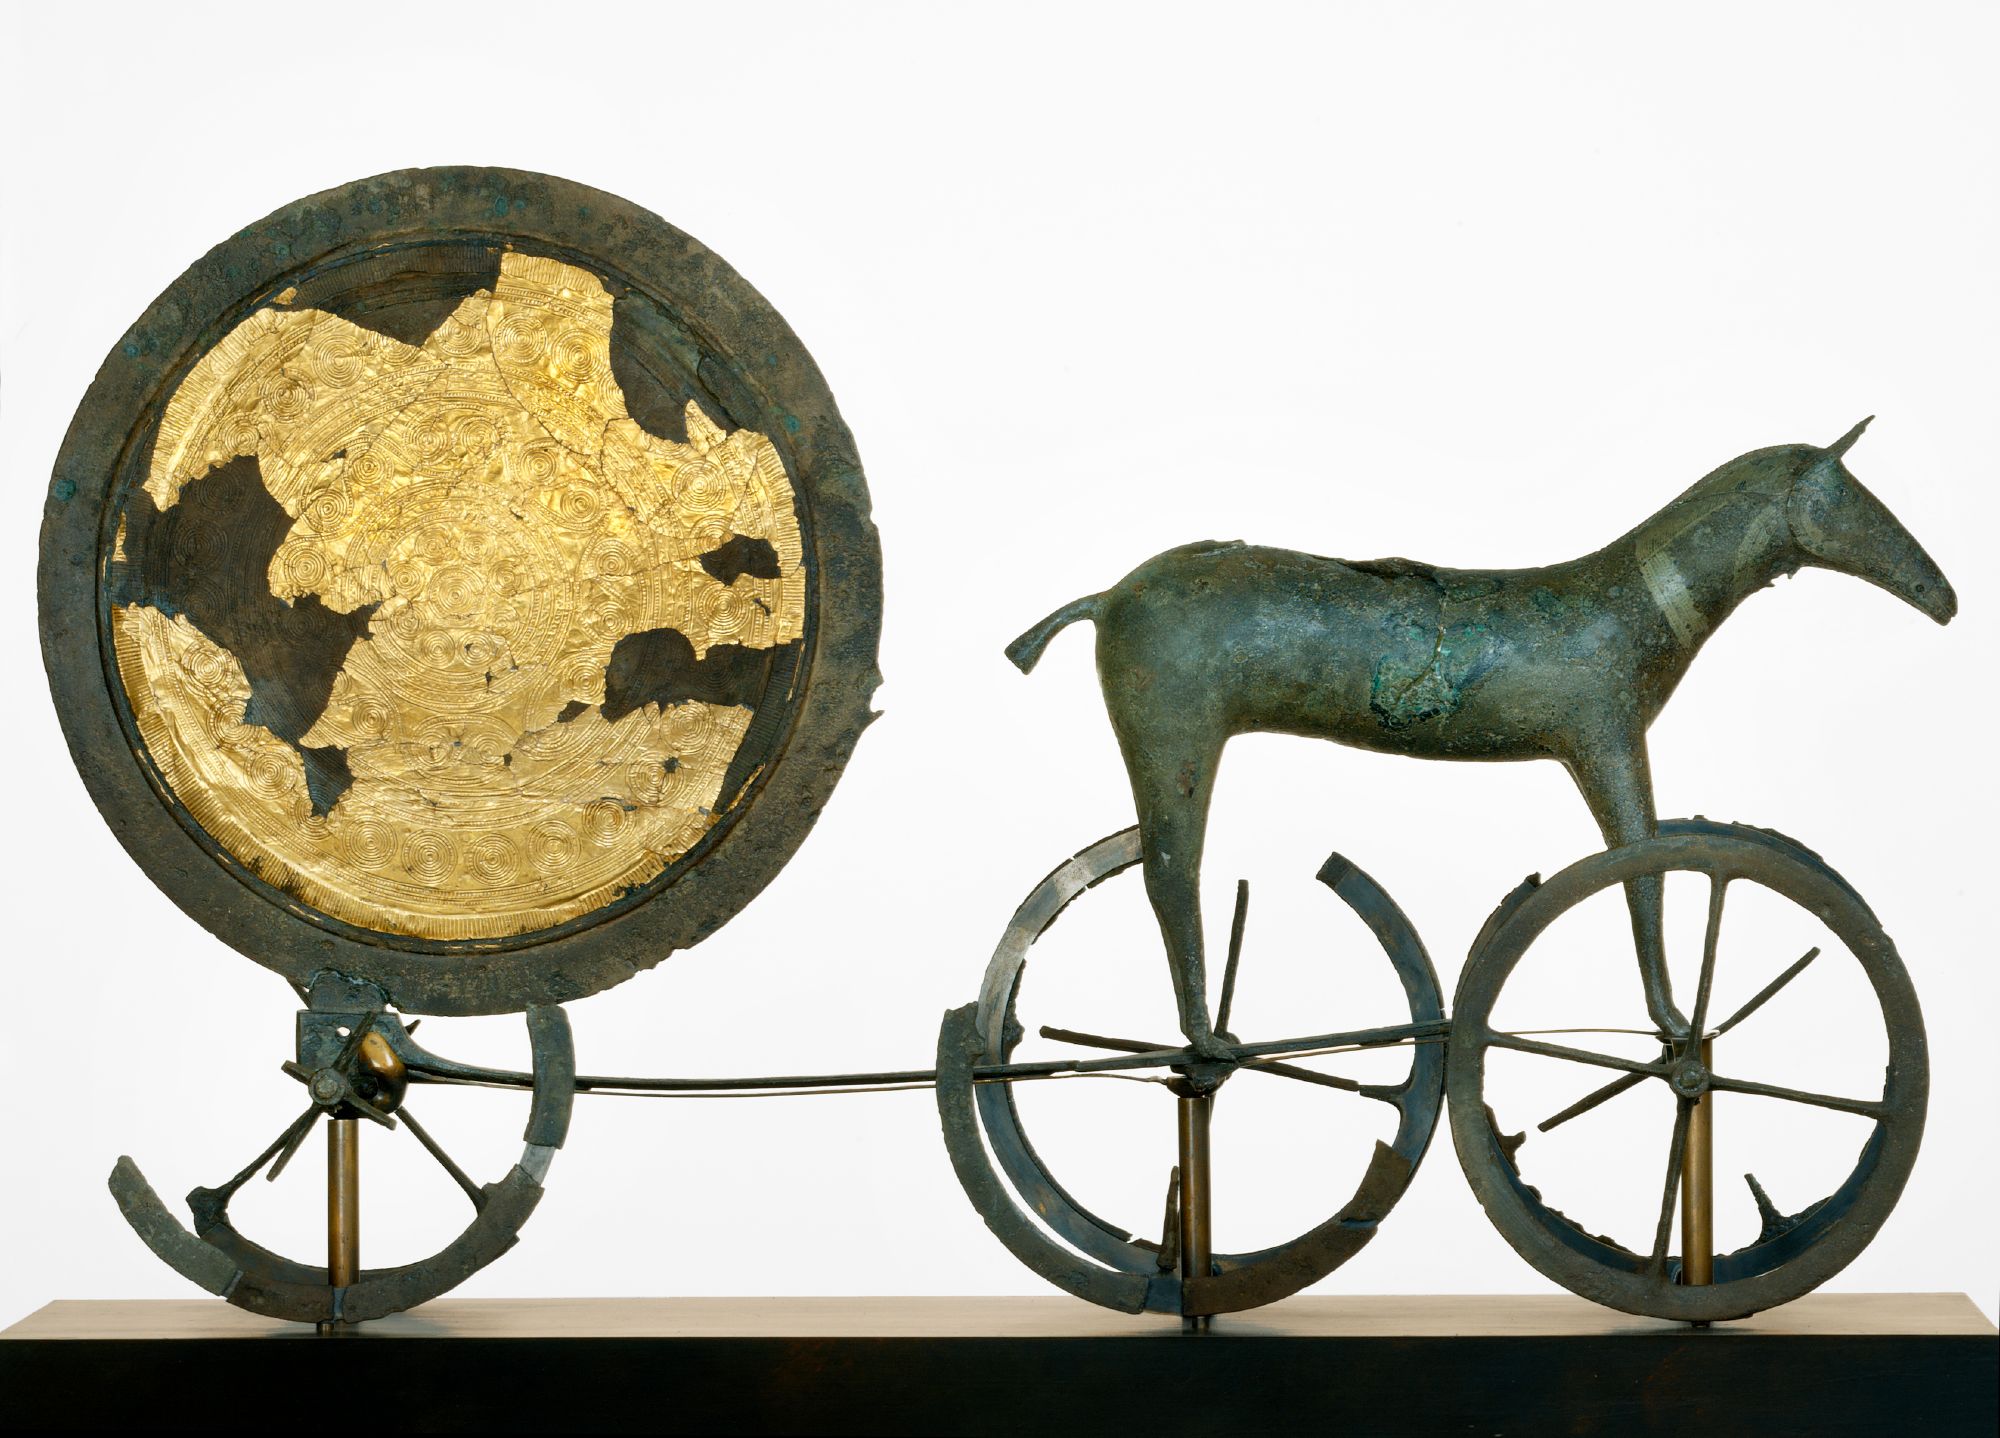 Le char solaire de Trundholm est un célèbre objet de bronze daté du premier âge du bronze, soit aux alentours de 1400 av. J.-C. © Nationalmuseet, John Lee, Wikipédia, CC by-sa 2.5